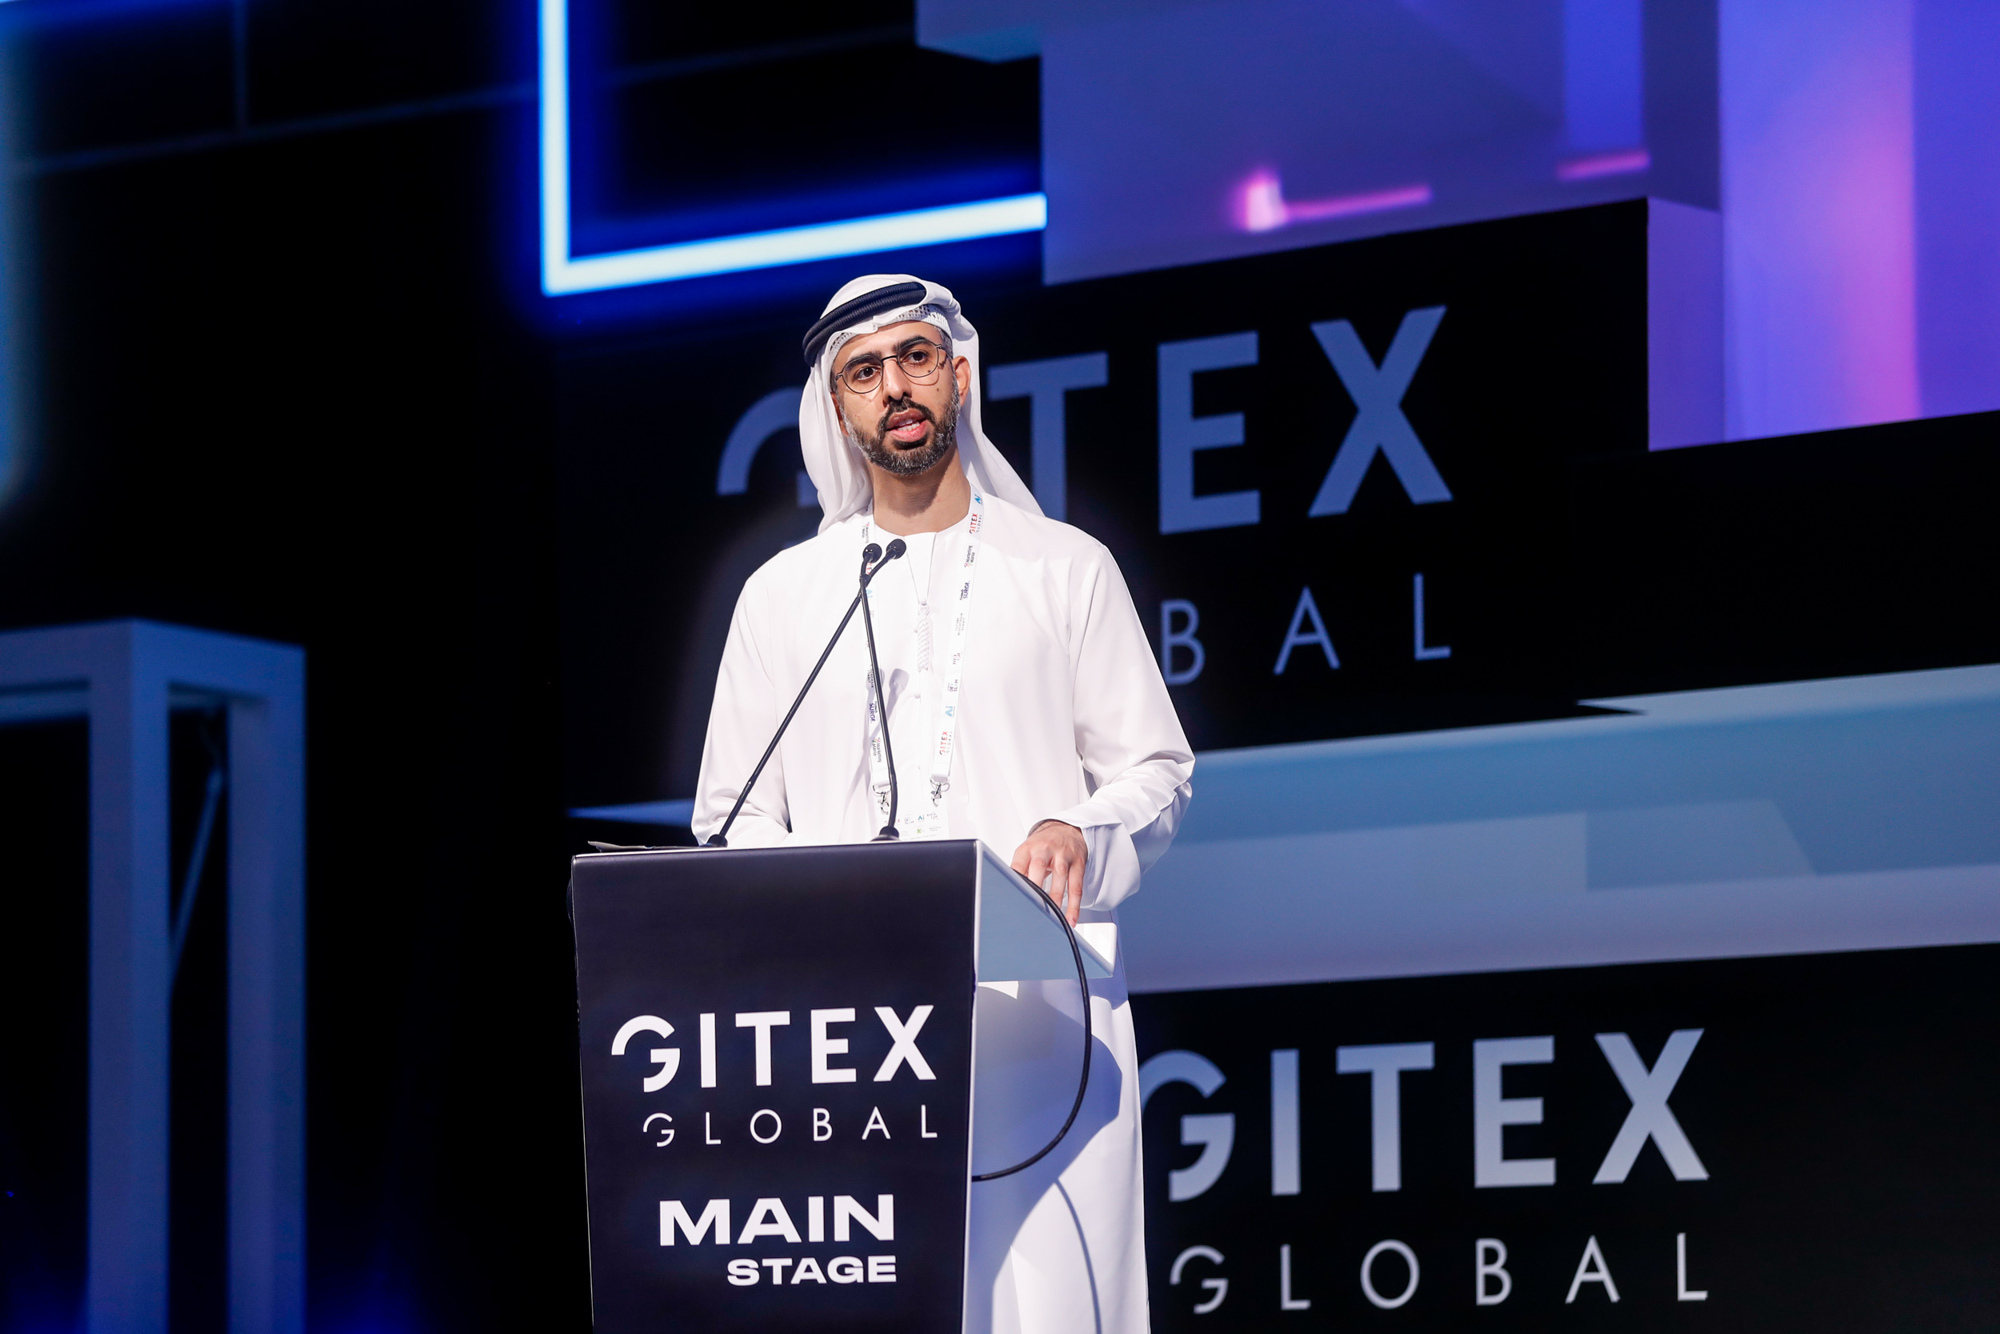 "دبي التجاري العالمي": جيتكس جلوبال 2022 يحقق ناتجاً اقتصادياً قياسياً بلغ 2.6 مليار درهم